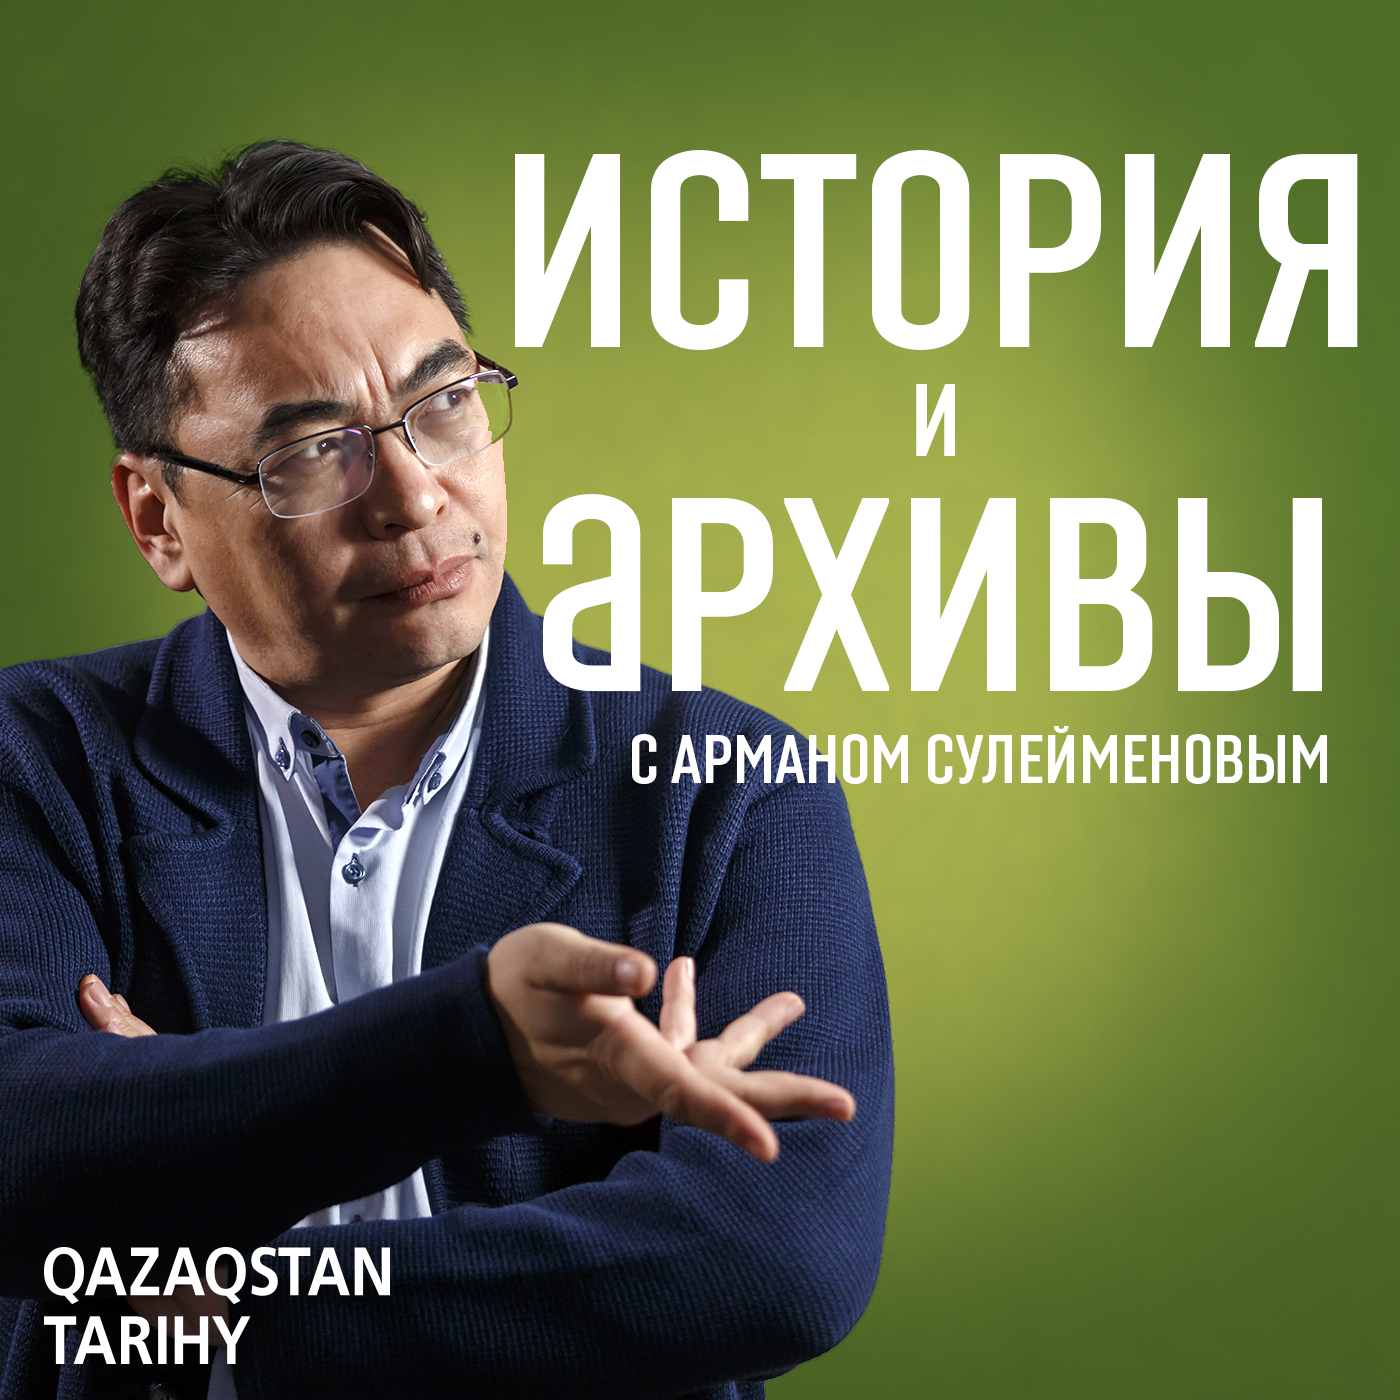 Казахская АССР - политический эксперимент. Часть 3